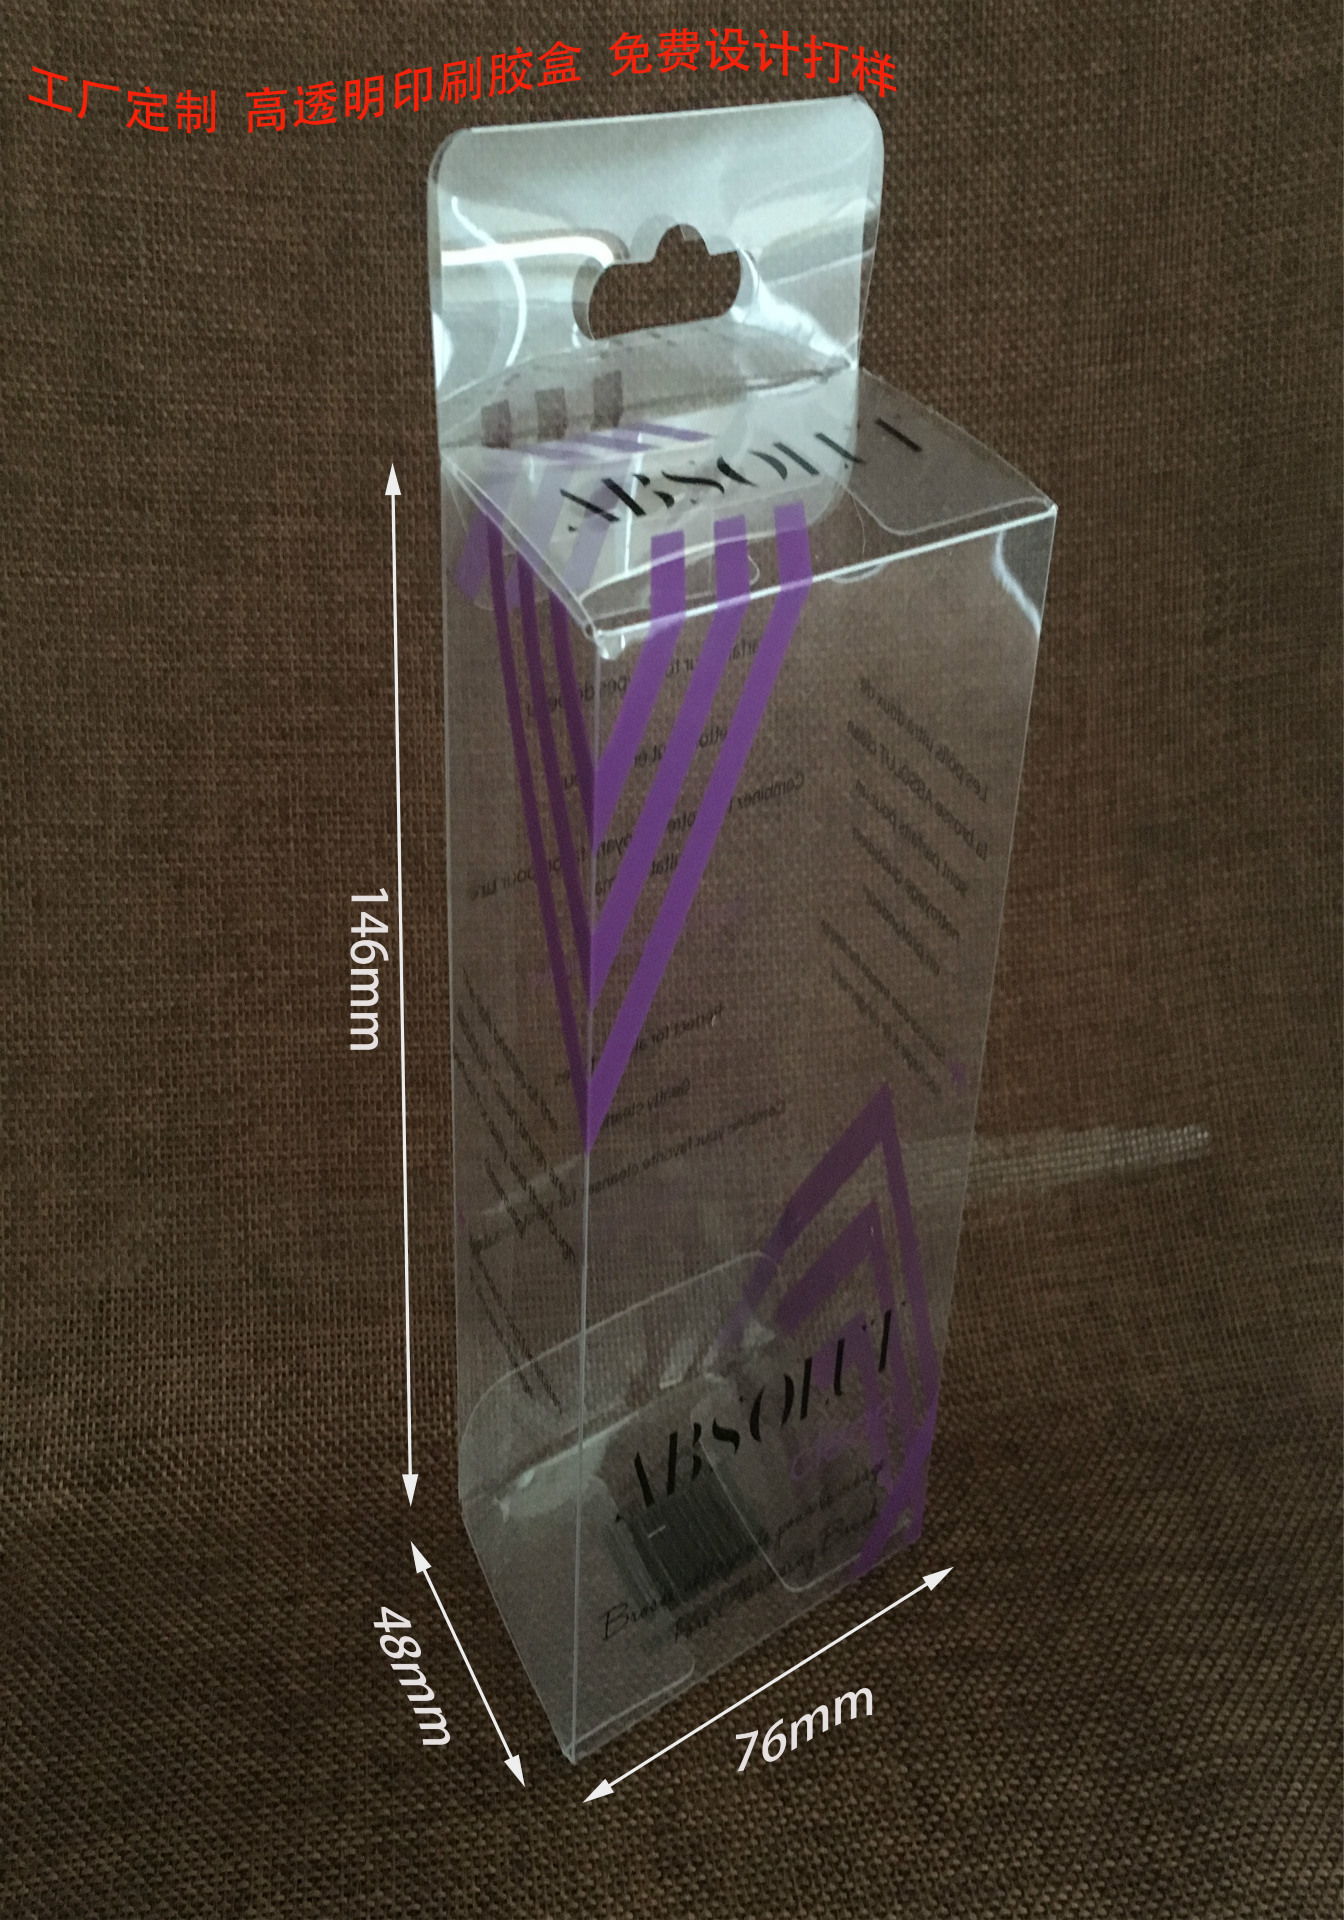 厂家定制PVC包装盒 PET透明塑料盒 PP磨砂盒子 礼品包装彩盒定